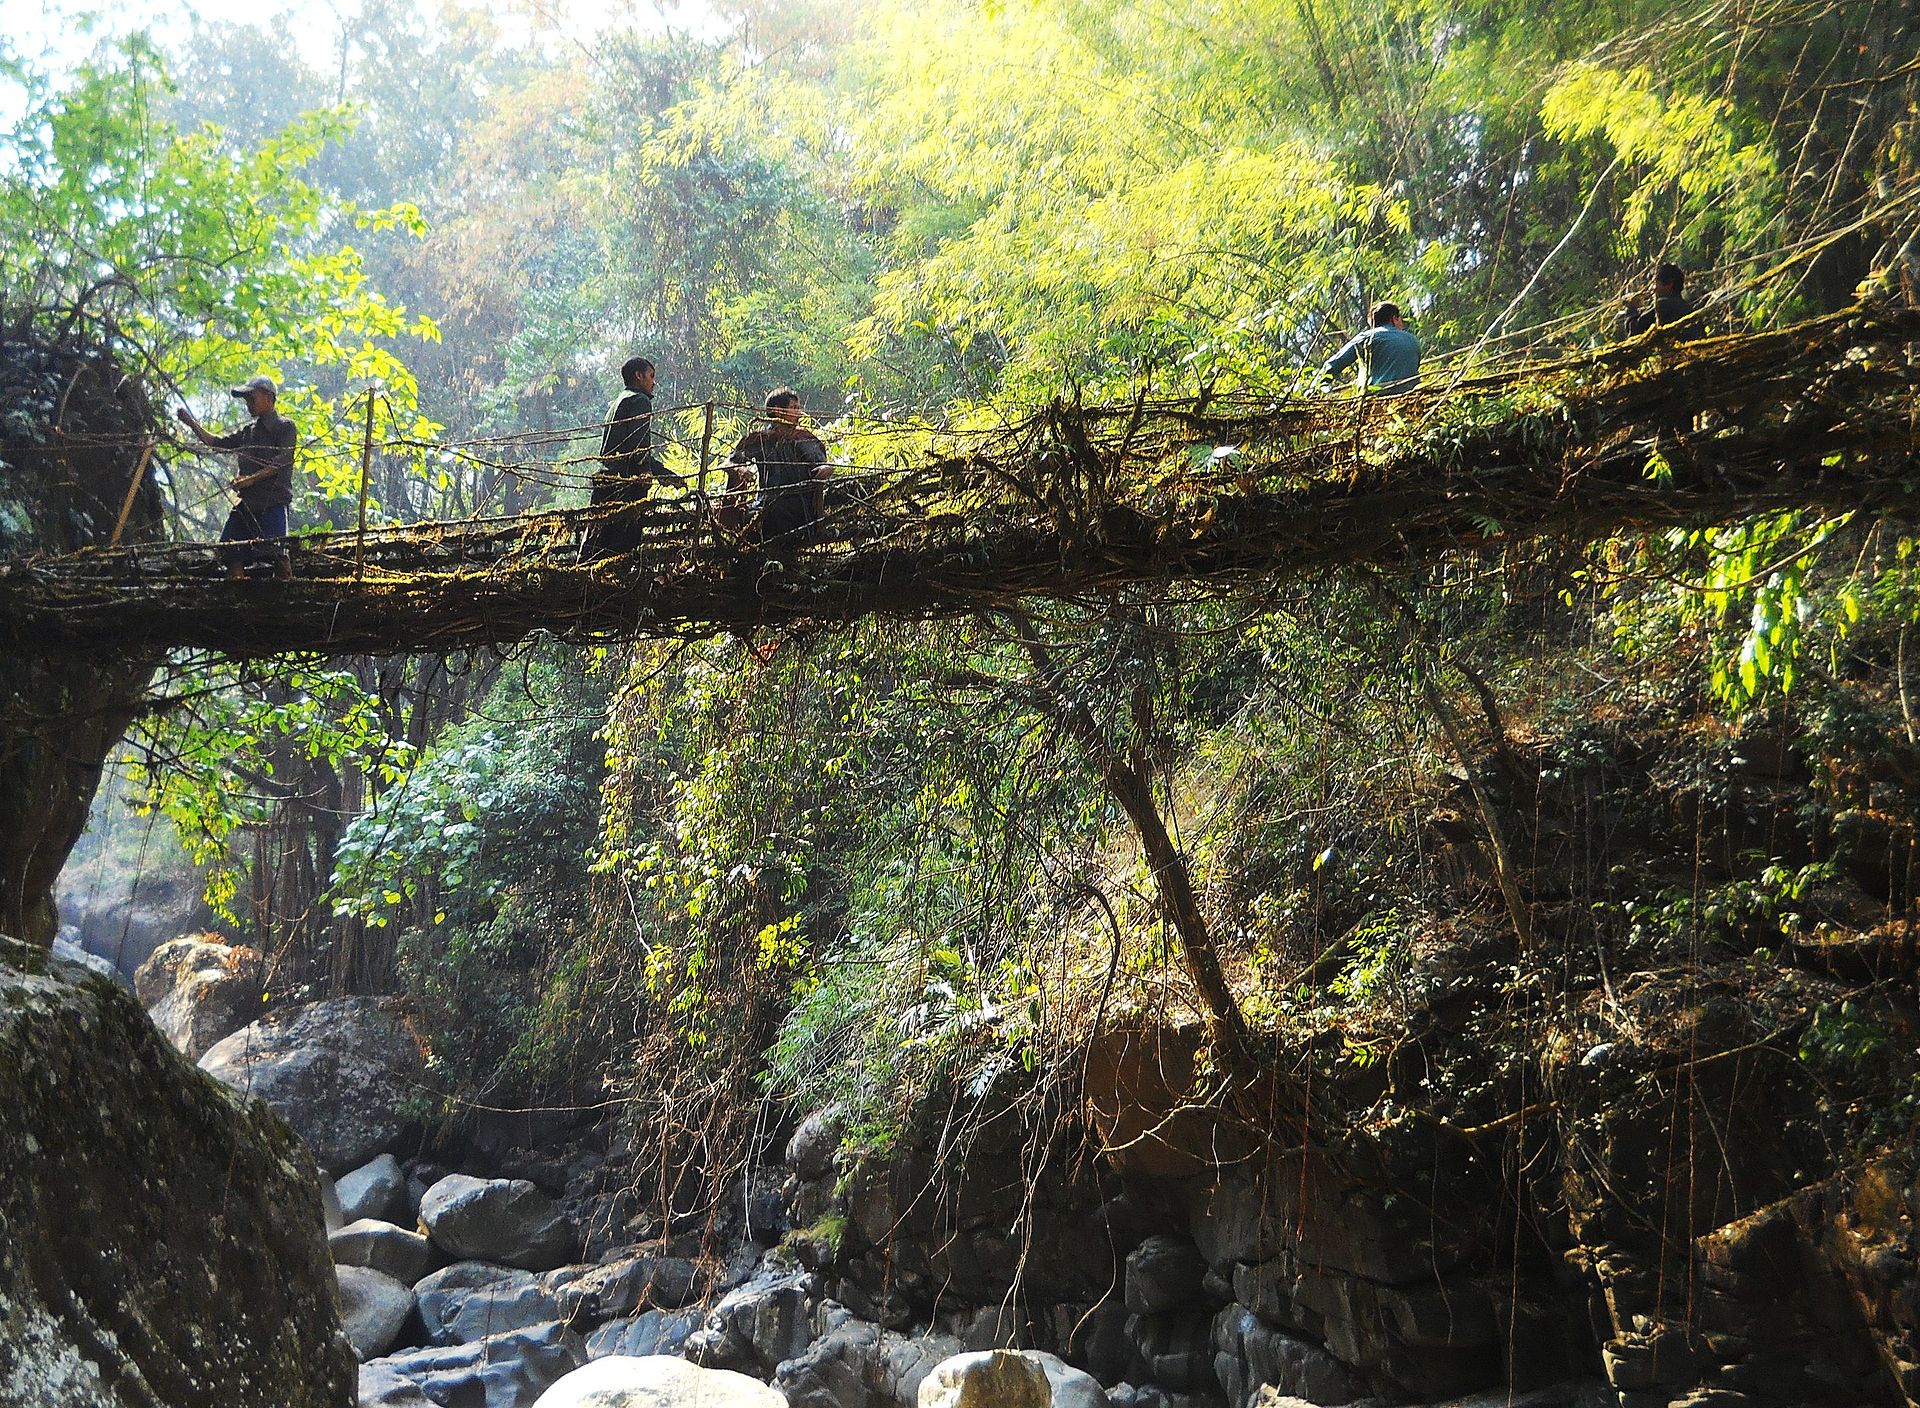 Народ Ксахи в Гималаях не строит мосты, а выращивает их как деревья. Живой мост через реку сплетается за 15 лет мосты, кхаси, мостов, постоянно, корни, фикуса, каучконосного, можно, этого, живых, через, между, уникальное, прочных, формирования, моста, более, искусство, скальных, поверхностях